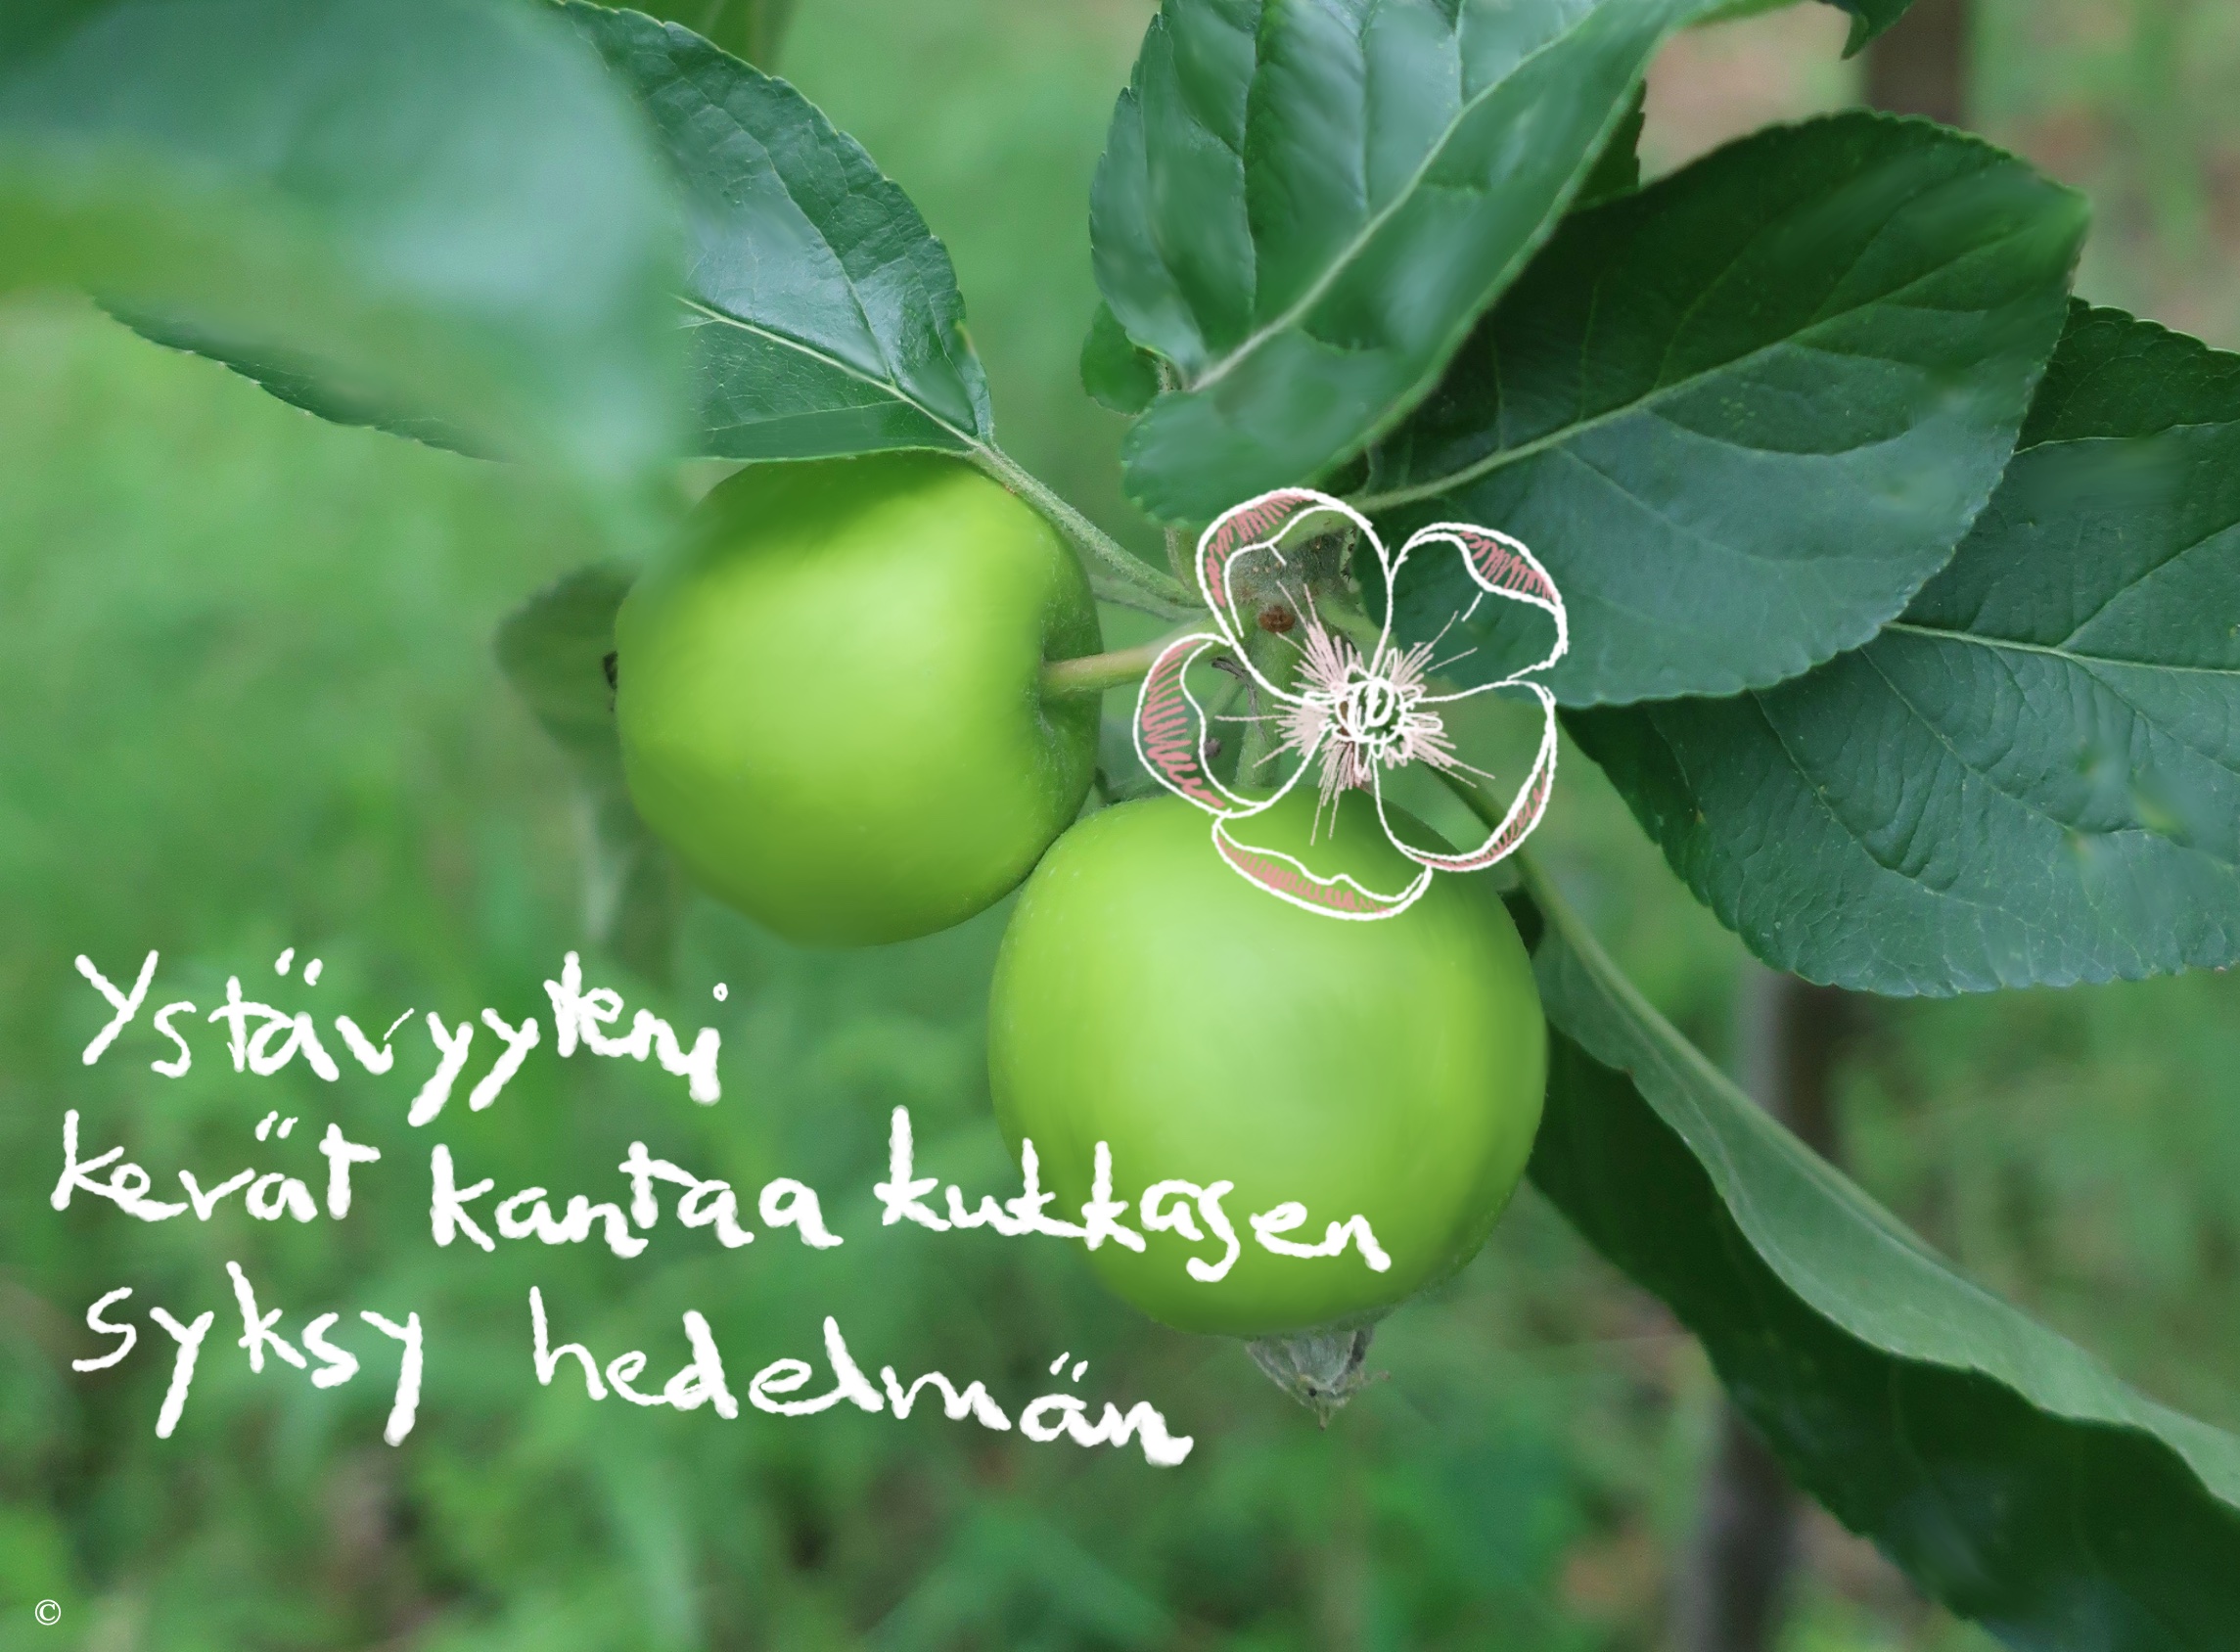 Omenapuussa on vihreitä omenia, joiden viereen on piirretty vaaleanpunainen kukka. Omenoiden alle on kirjoitettu haiku: ystävyyteni, kevät kantaa kukkasen, syksy hedelmän.